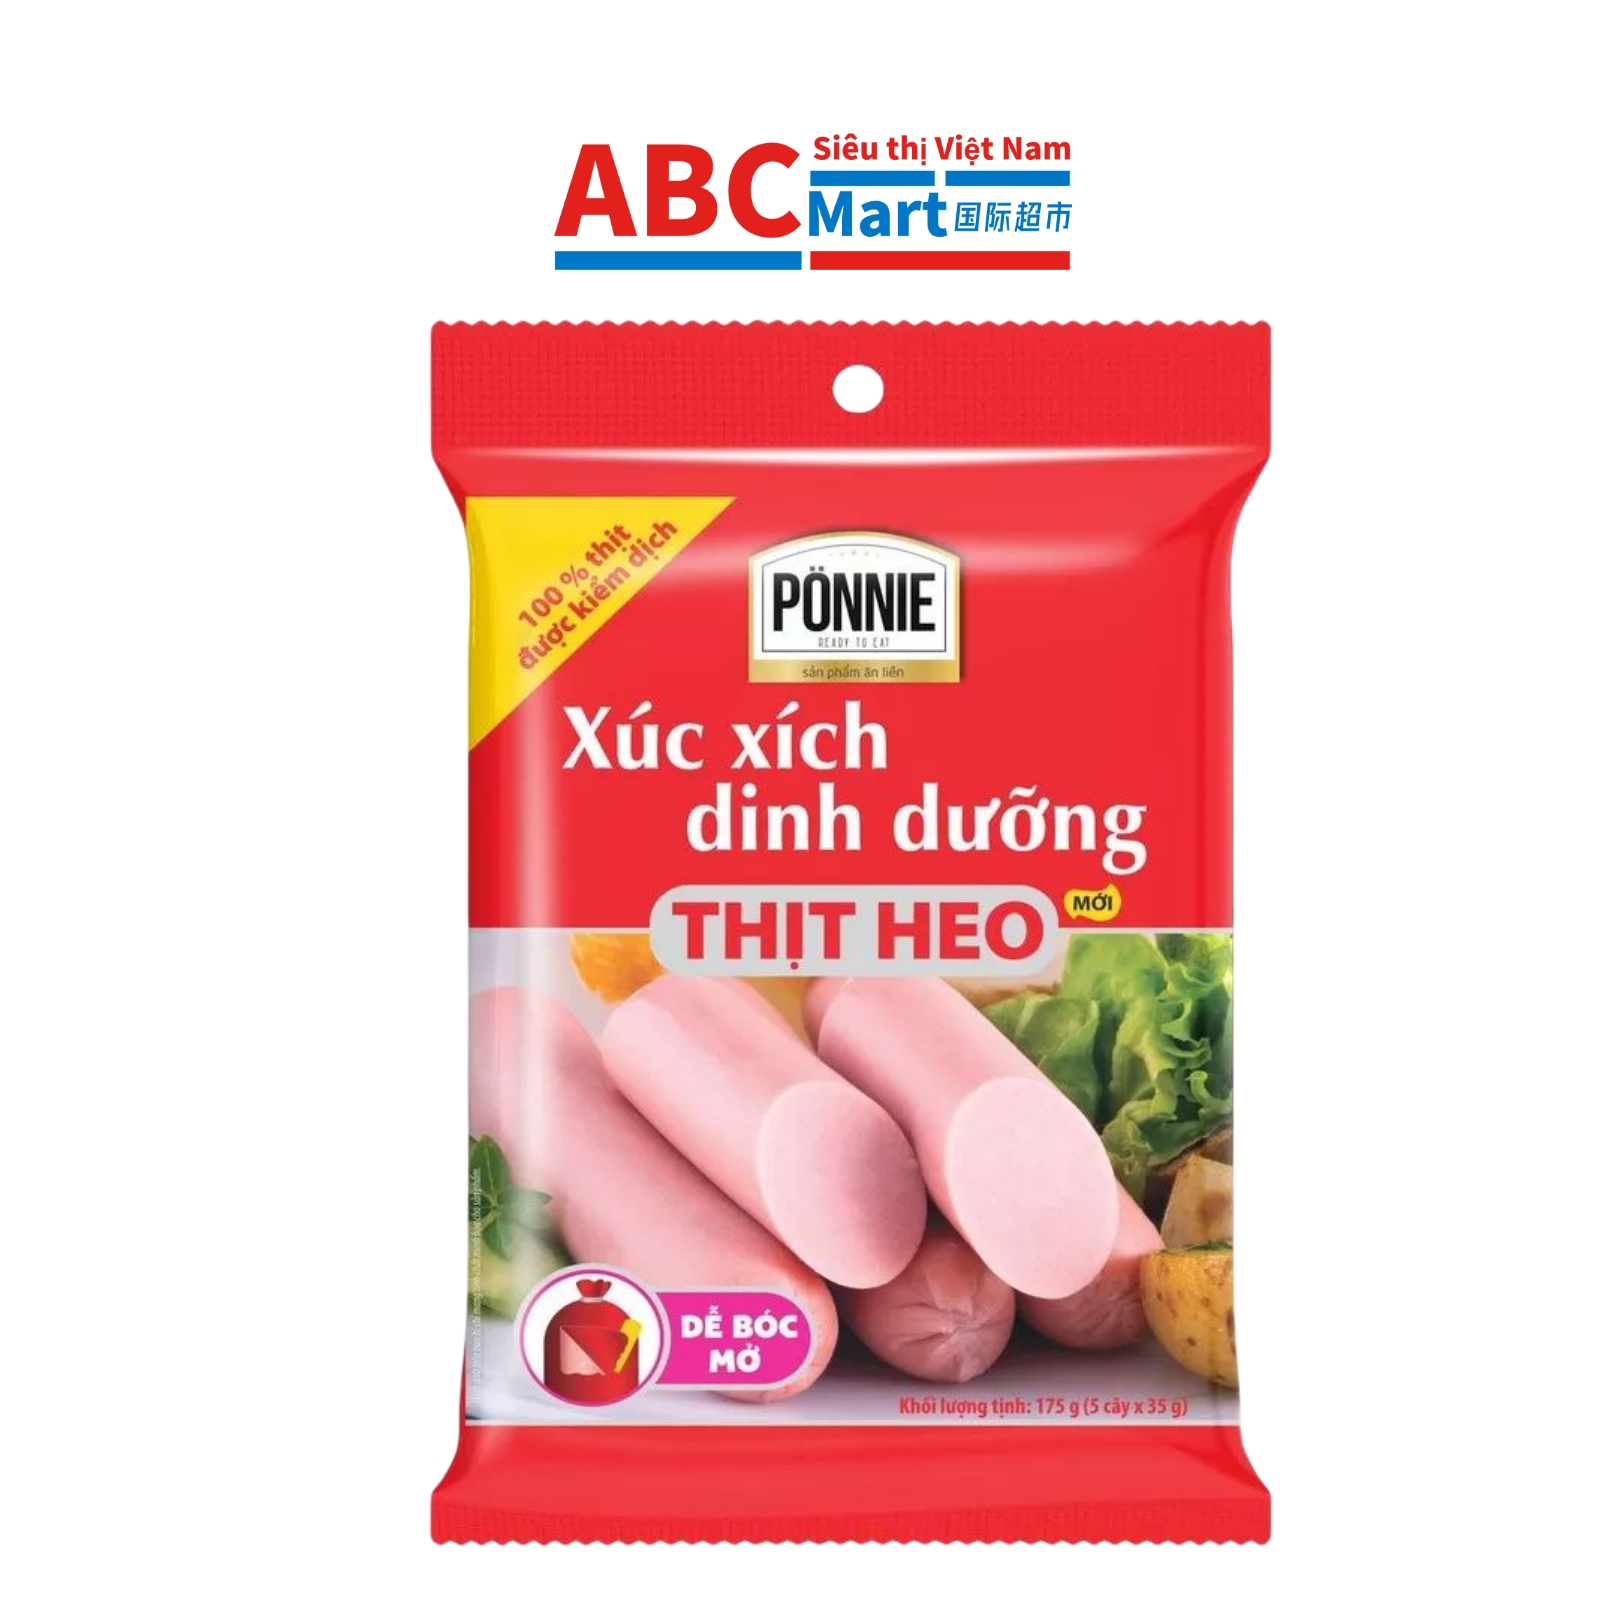 【Việt Nam- Xúc Xích Heo Ponnie 175g (35g*5pcs)】Việt Nam猪肉火腿肠175g-ABCMart 国际超市